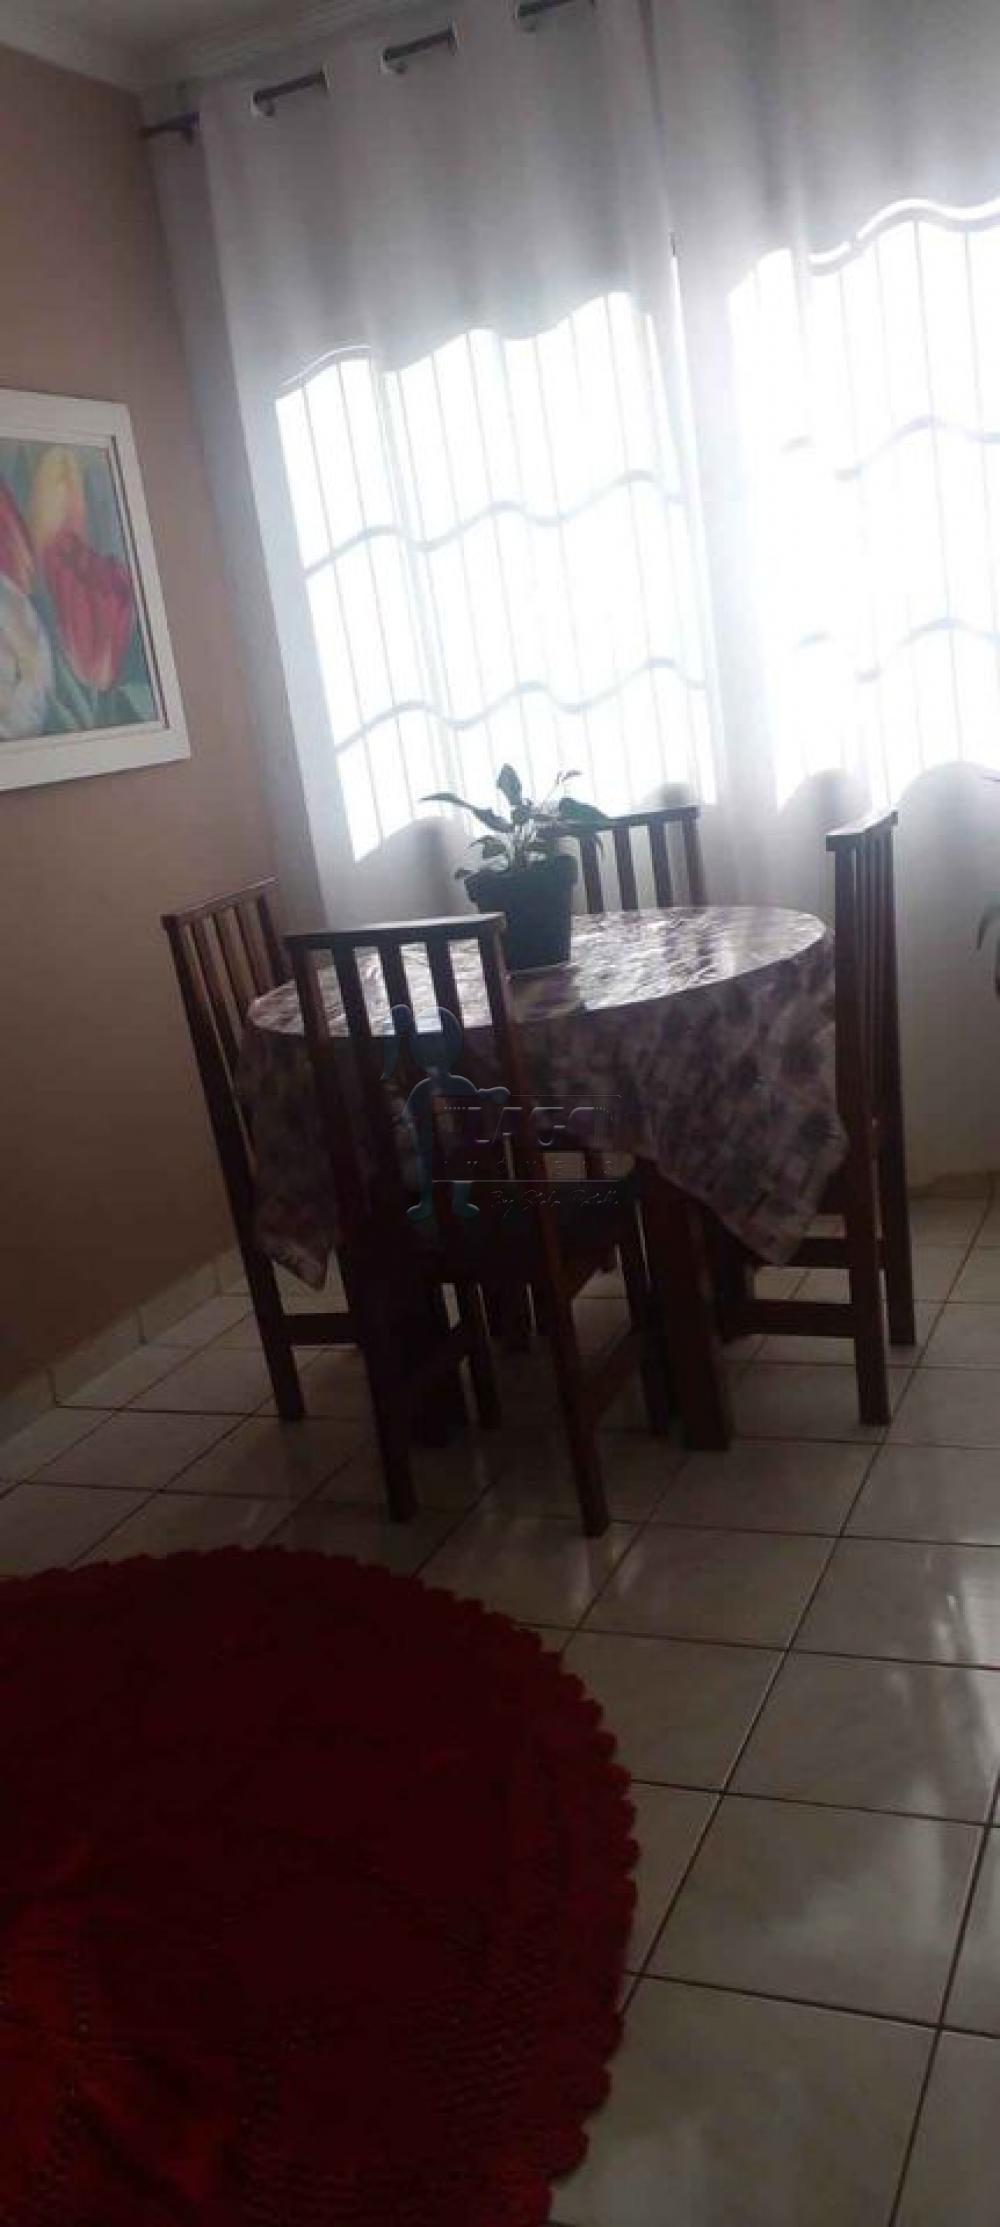 Comprar Apartamento / Padrão em Ribeirão Preto R$ 186.000,00 - Foto 5